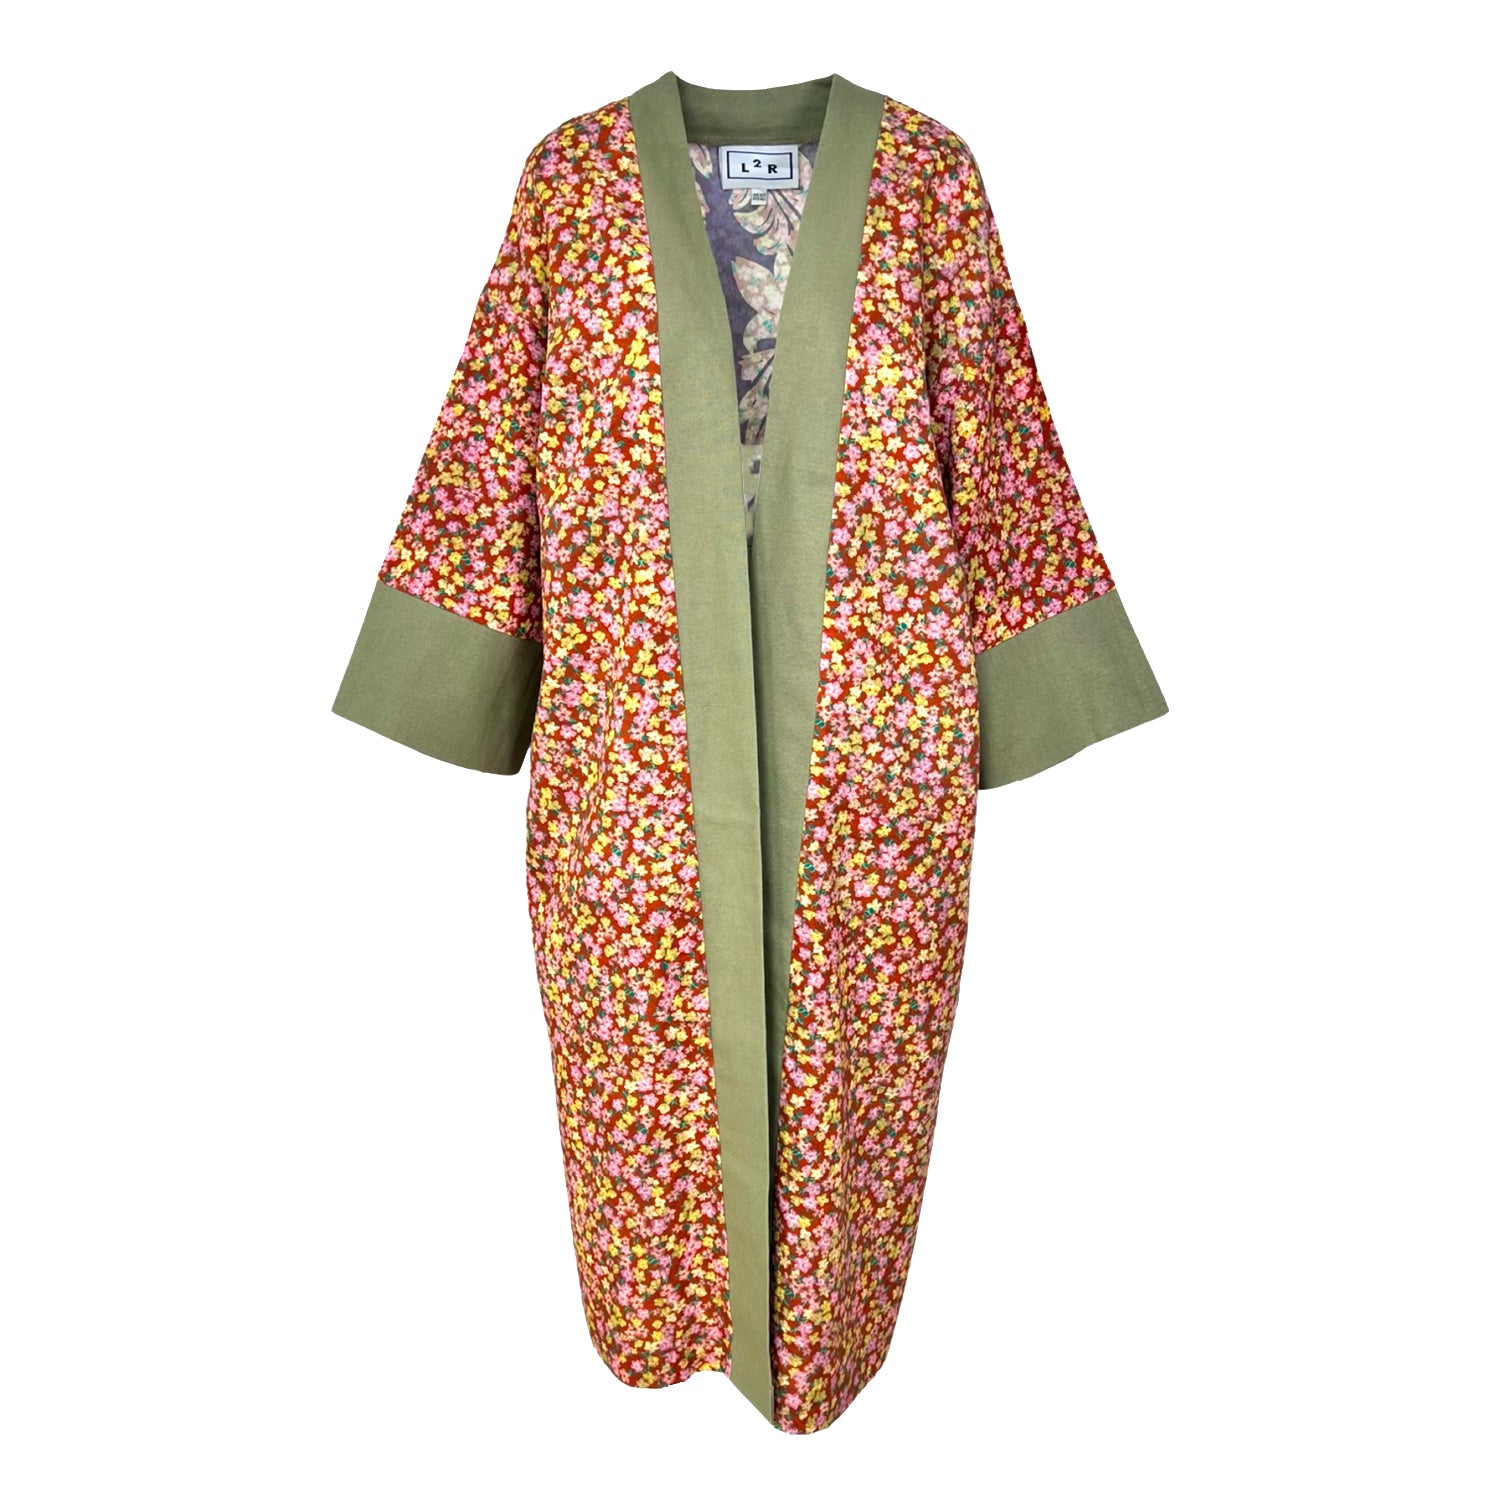 Reversible Kaftan Kimono - Floral Brown & Green Print